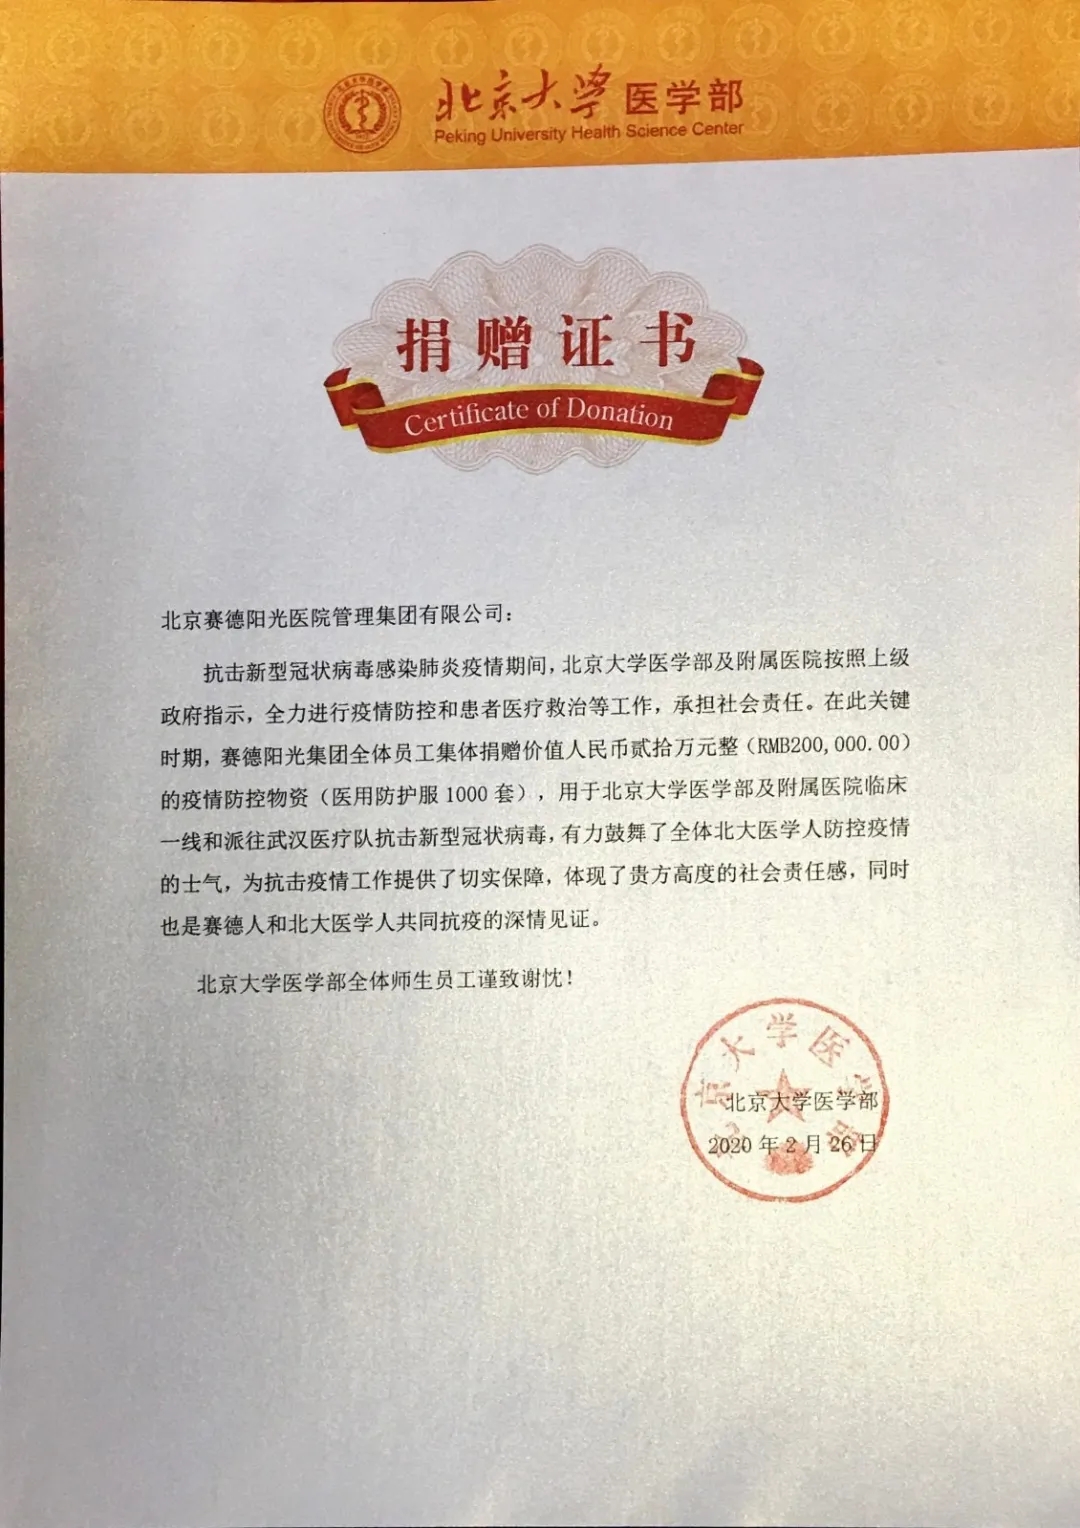 疫情防控物资送到了北大医学部用于北京大学医学部及附属医院临床一线和派往武汉医疗队抗击新型冠状病毒